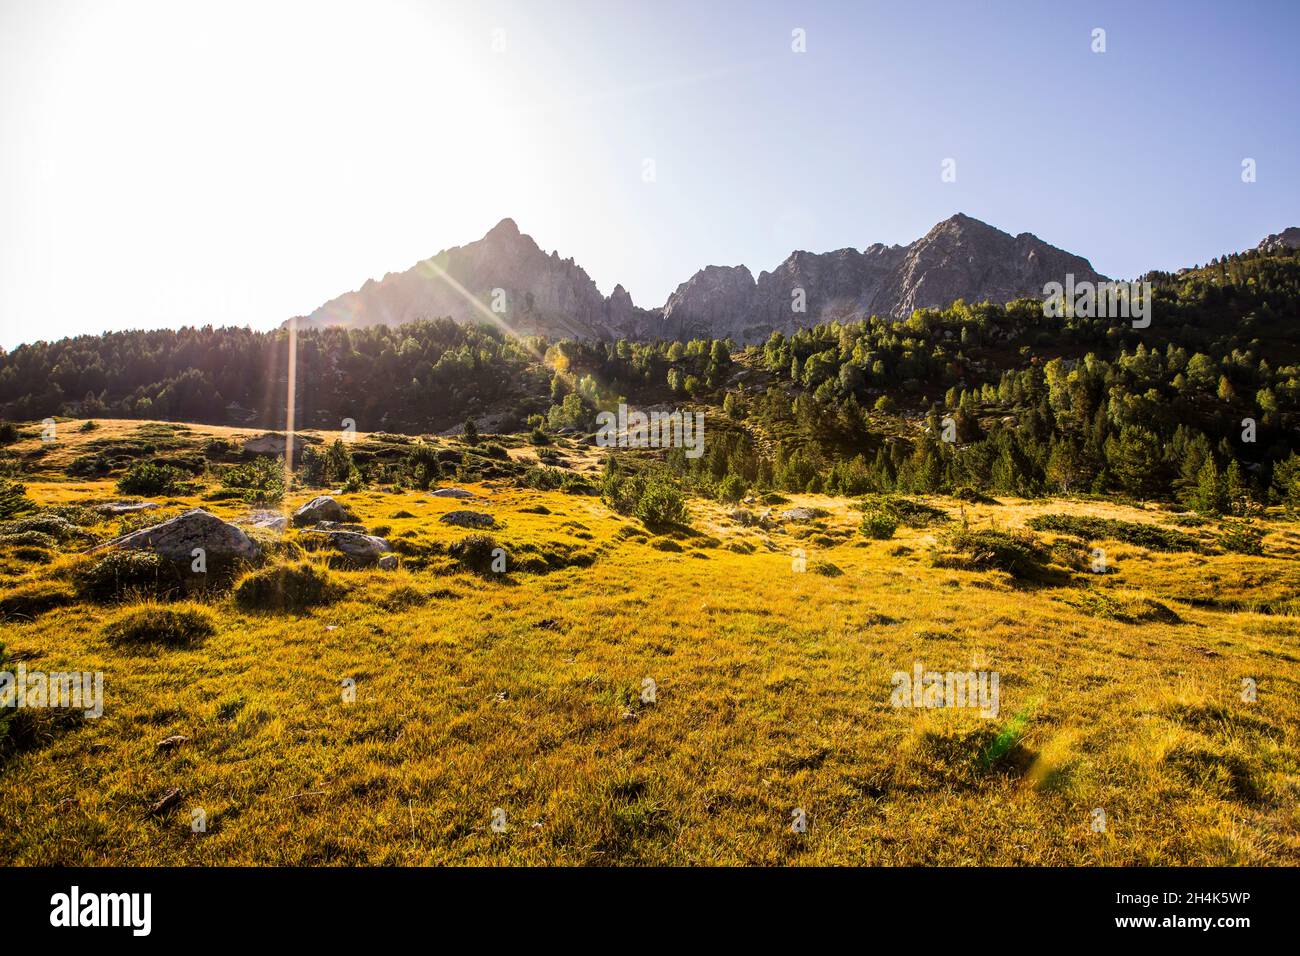 Paysage de montagne, vallée de Campcardos, la Cerdanya, Pyrénées, France Banque D'Images